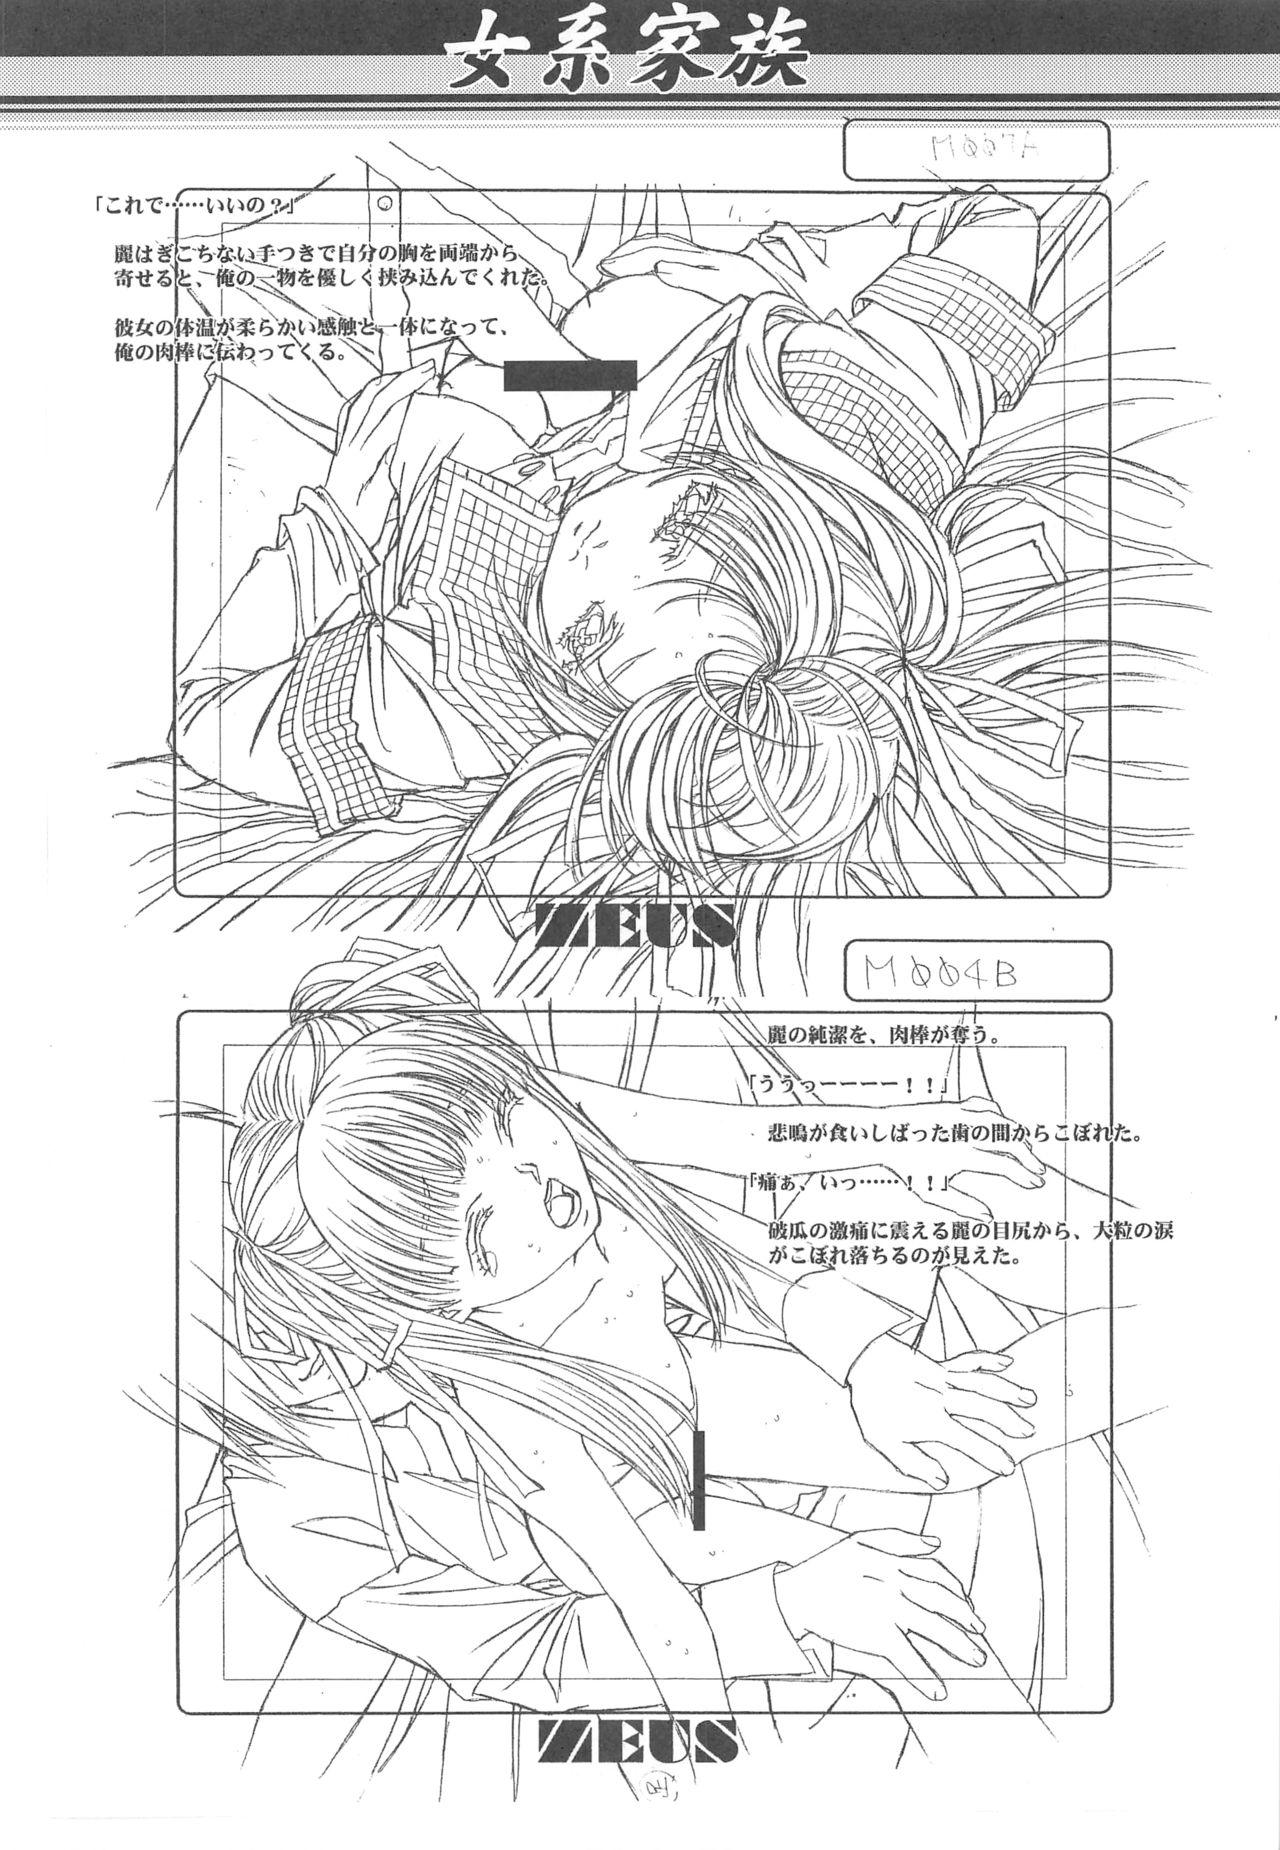 Otonano Do-wa Vol. 14 & Jokei Kazoku Senga shuu 60